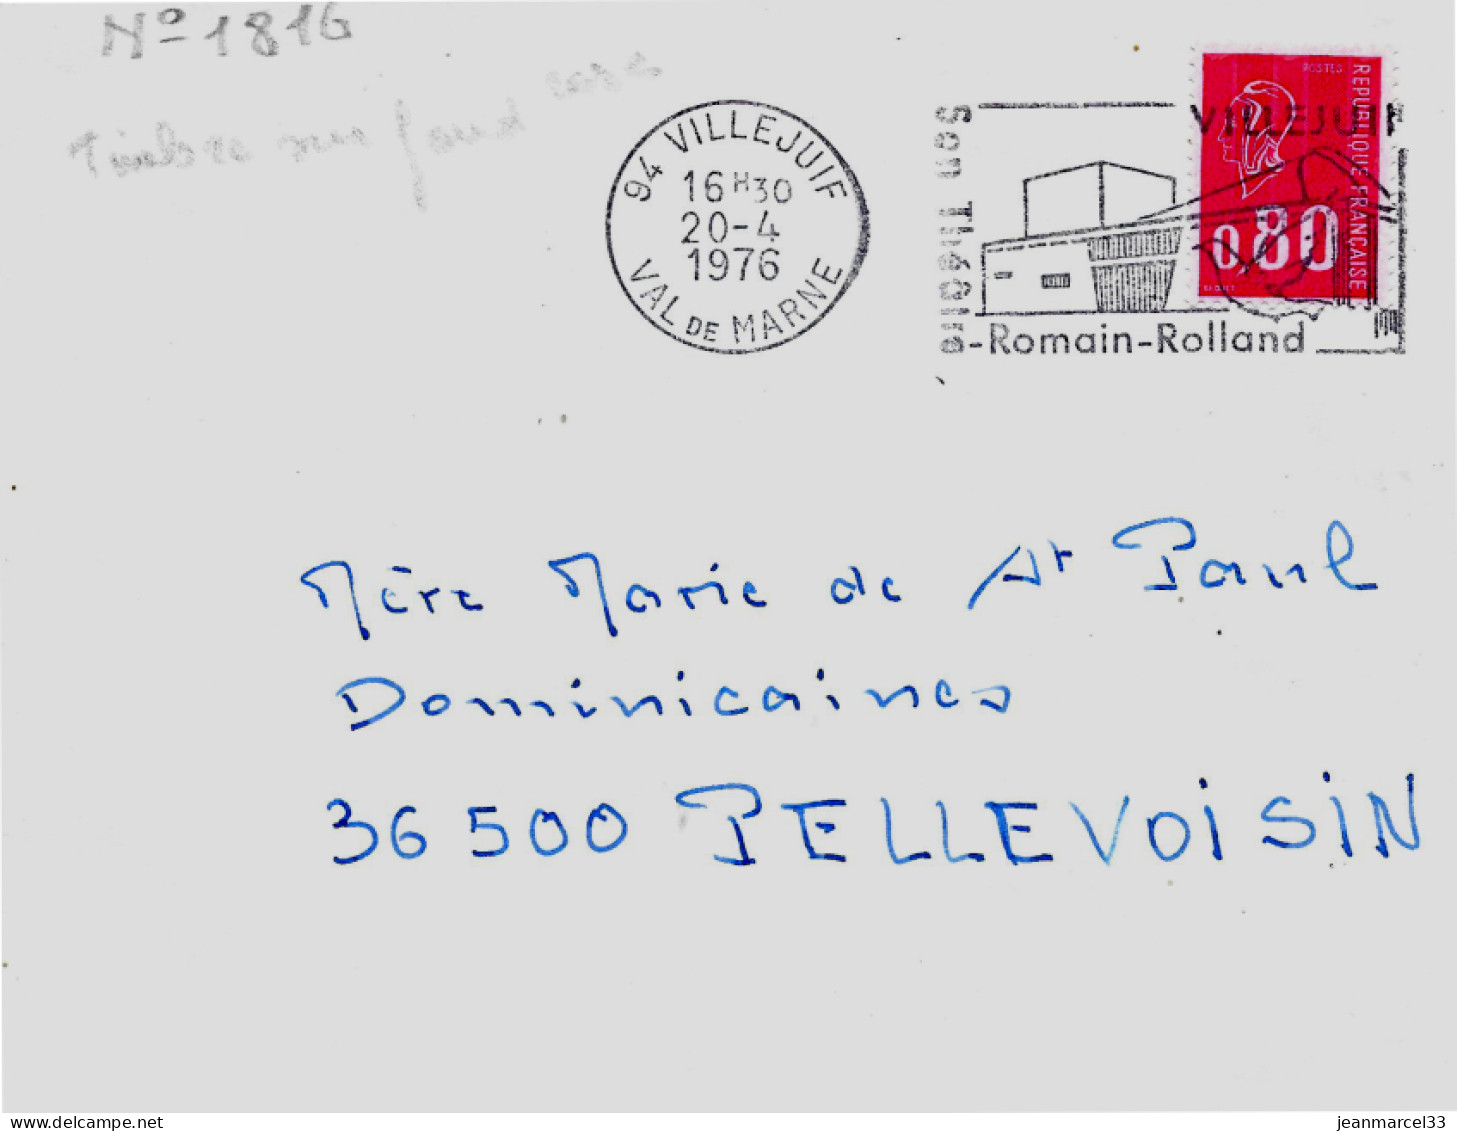 Variété Sur Lettre N° Yvert 1816L 3 Bandes Sur Fond Rosé Oblitération Secap 94 Villejuif 20-4 1976 - Covers & Documents